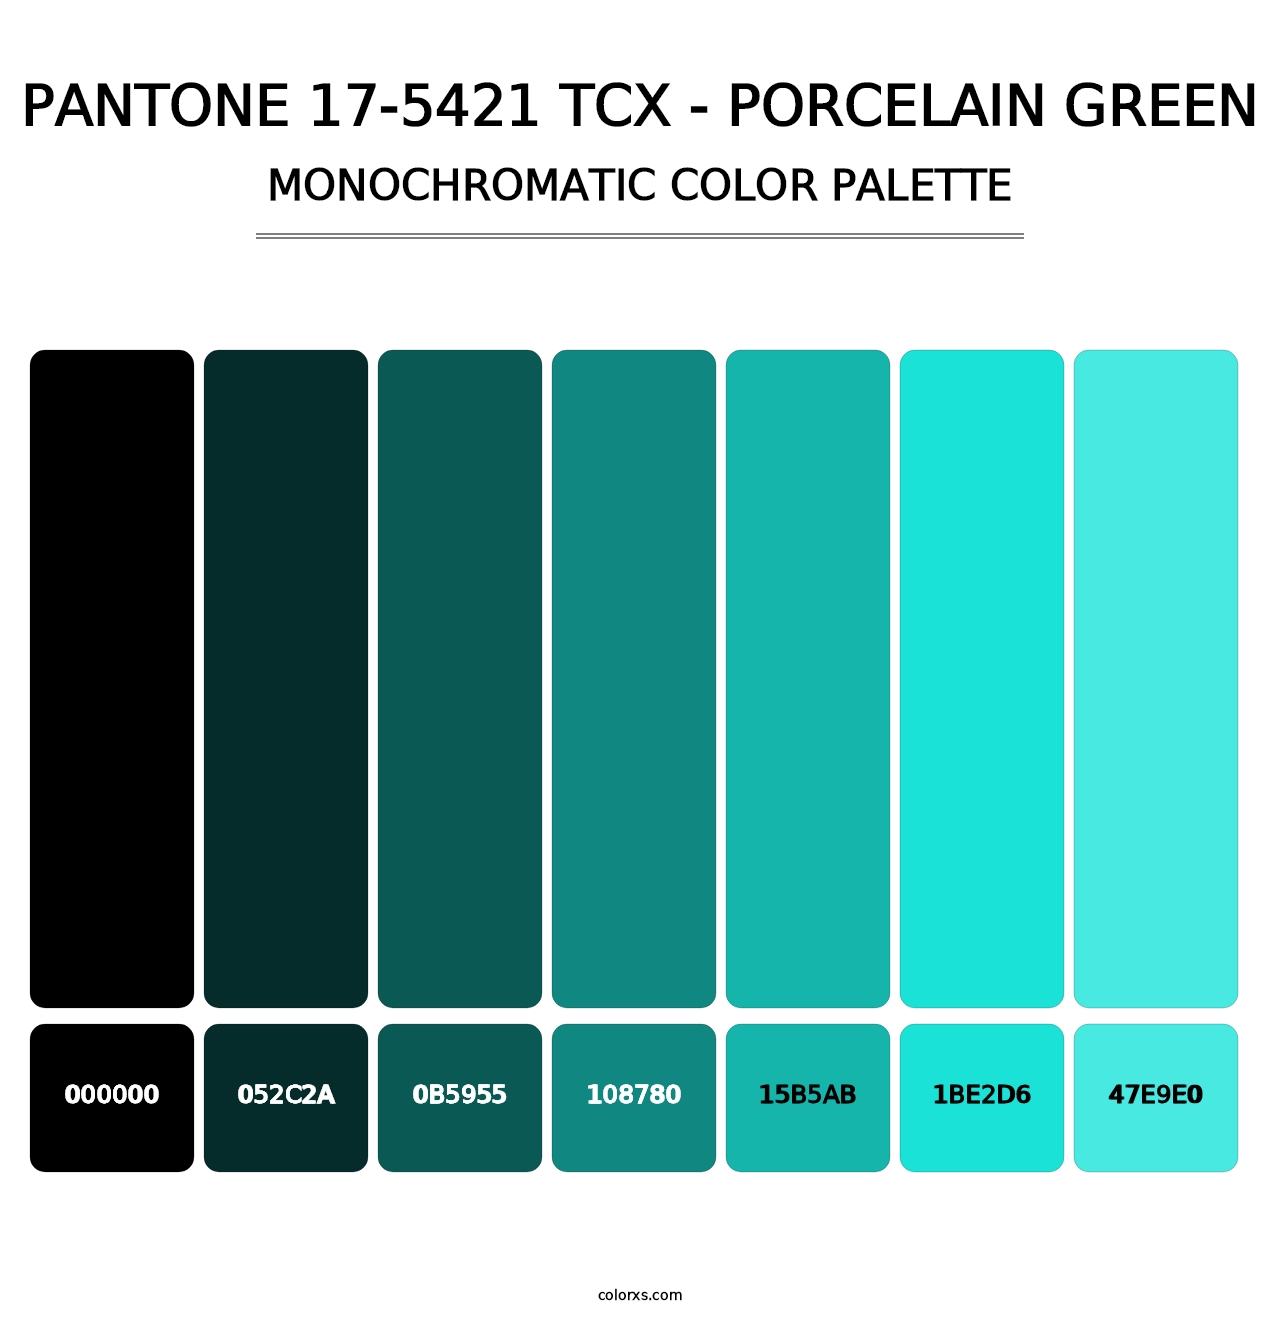 PANTONE 17-5421 TCX - Porcelain Green - Monochromatic Color Palette